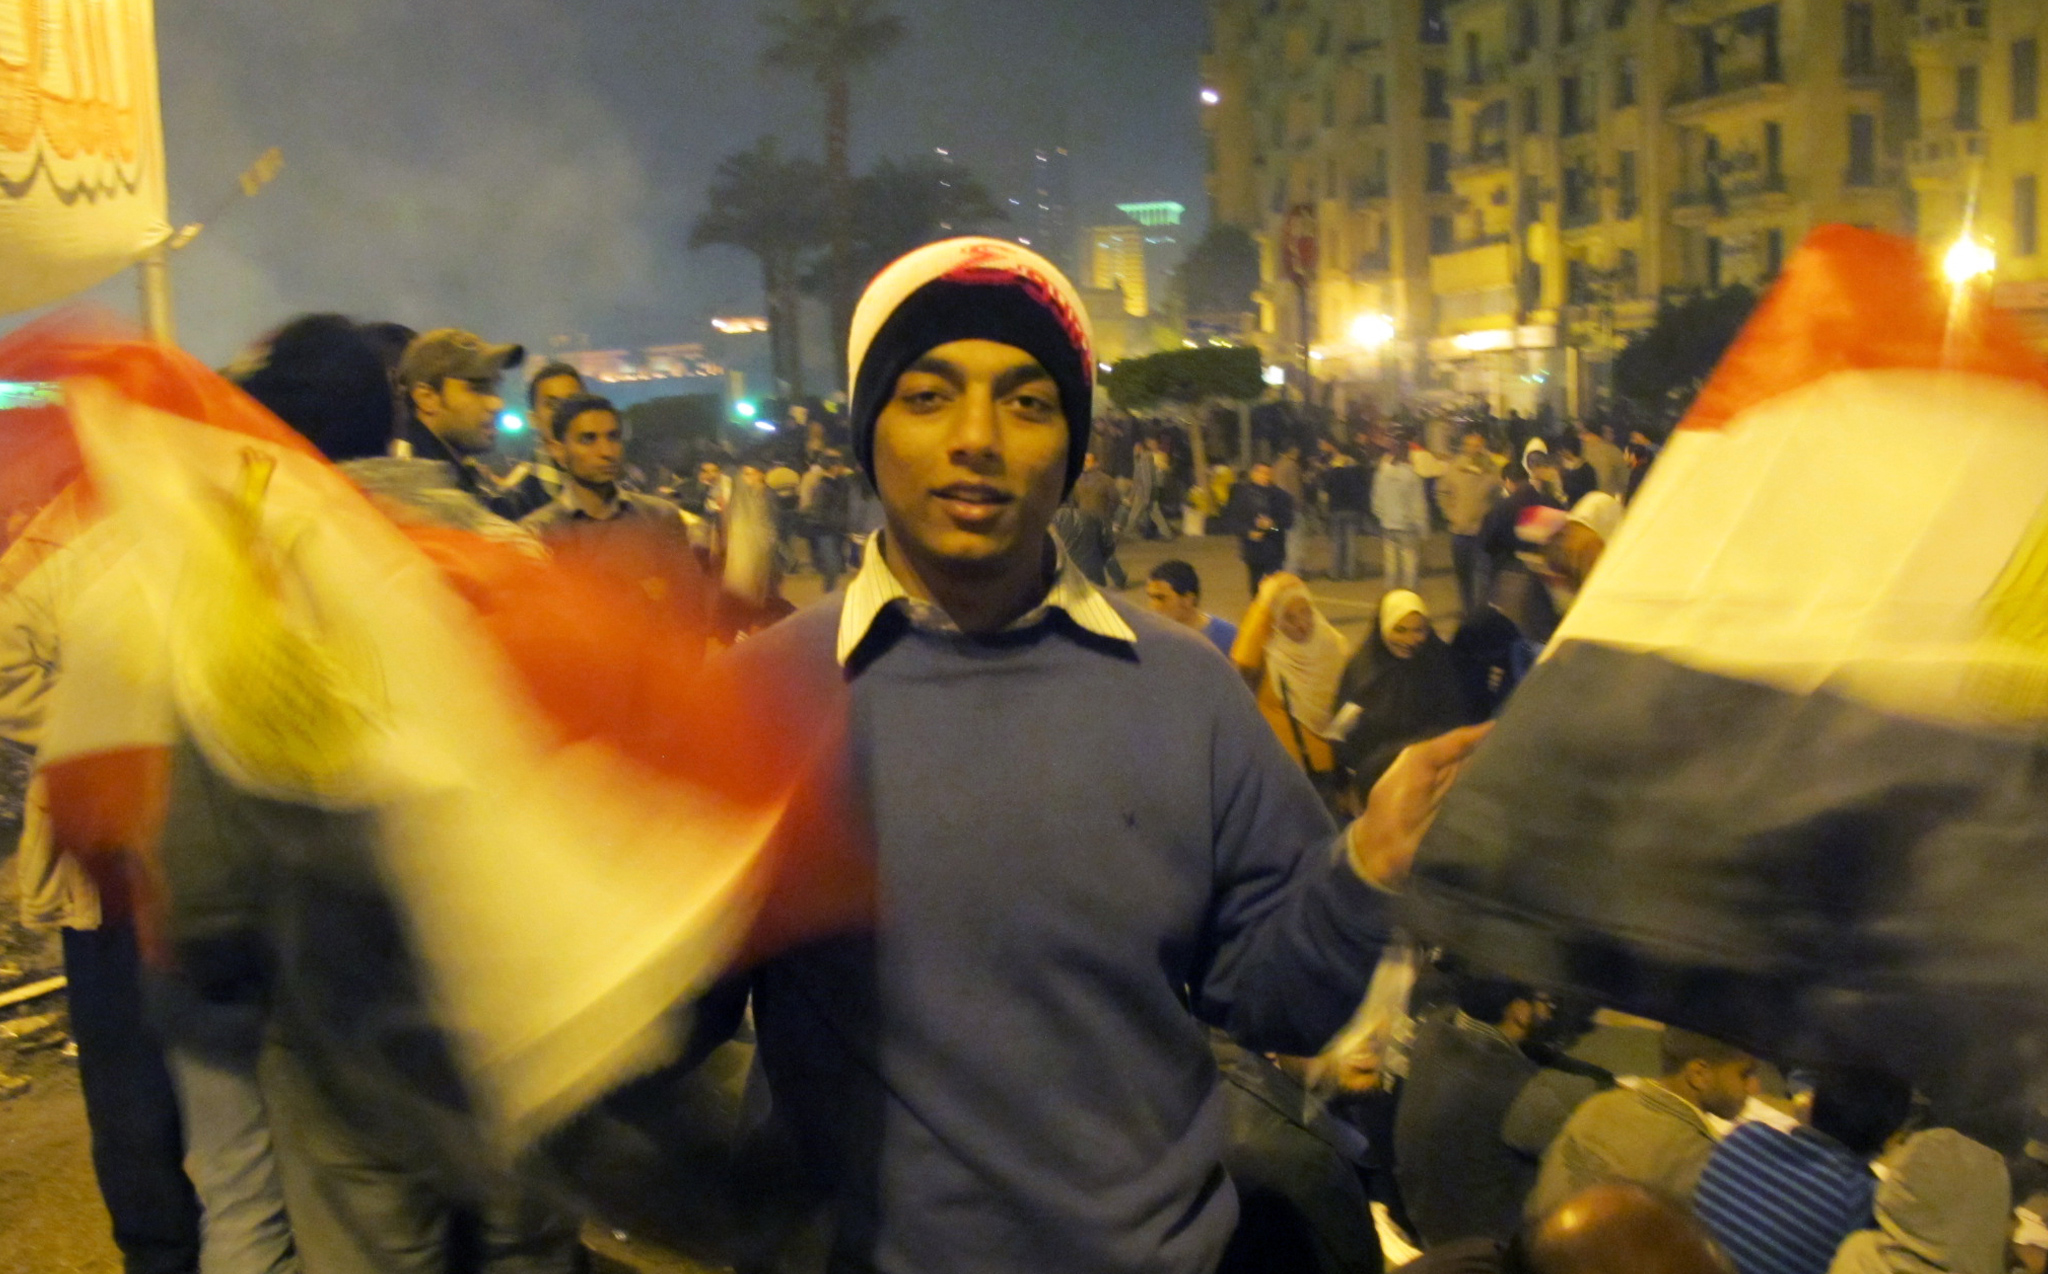  Le soir, les manifestants dorment à même le goudron de la place Tahrir transformée en agora populaire. D'autres en profitent pour faire des affaires, <br>comme ce vendeur ambulant de drapeaux égyptiens. (Crédit photo : Marc Daou)
